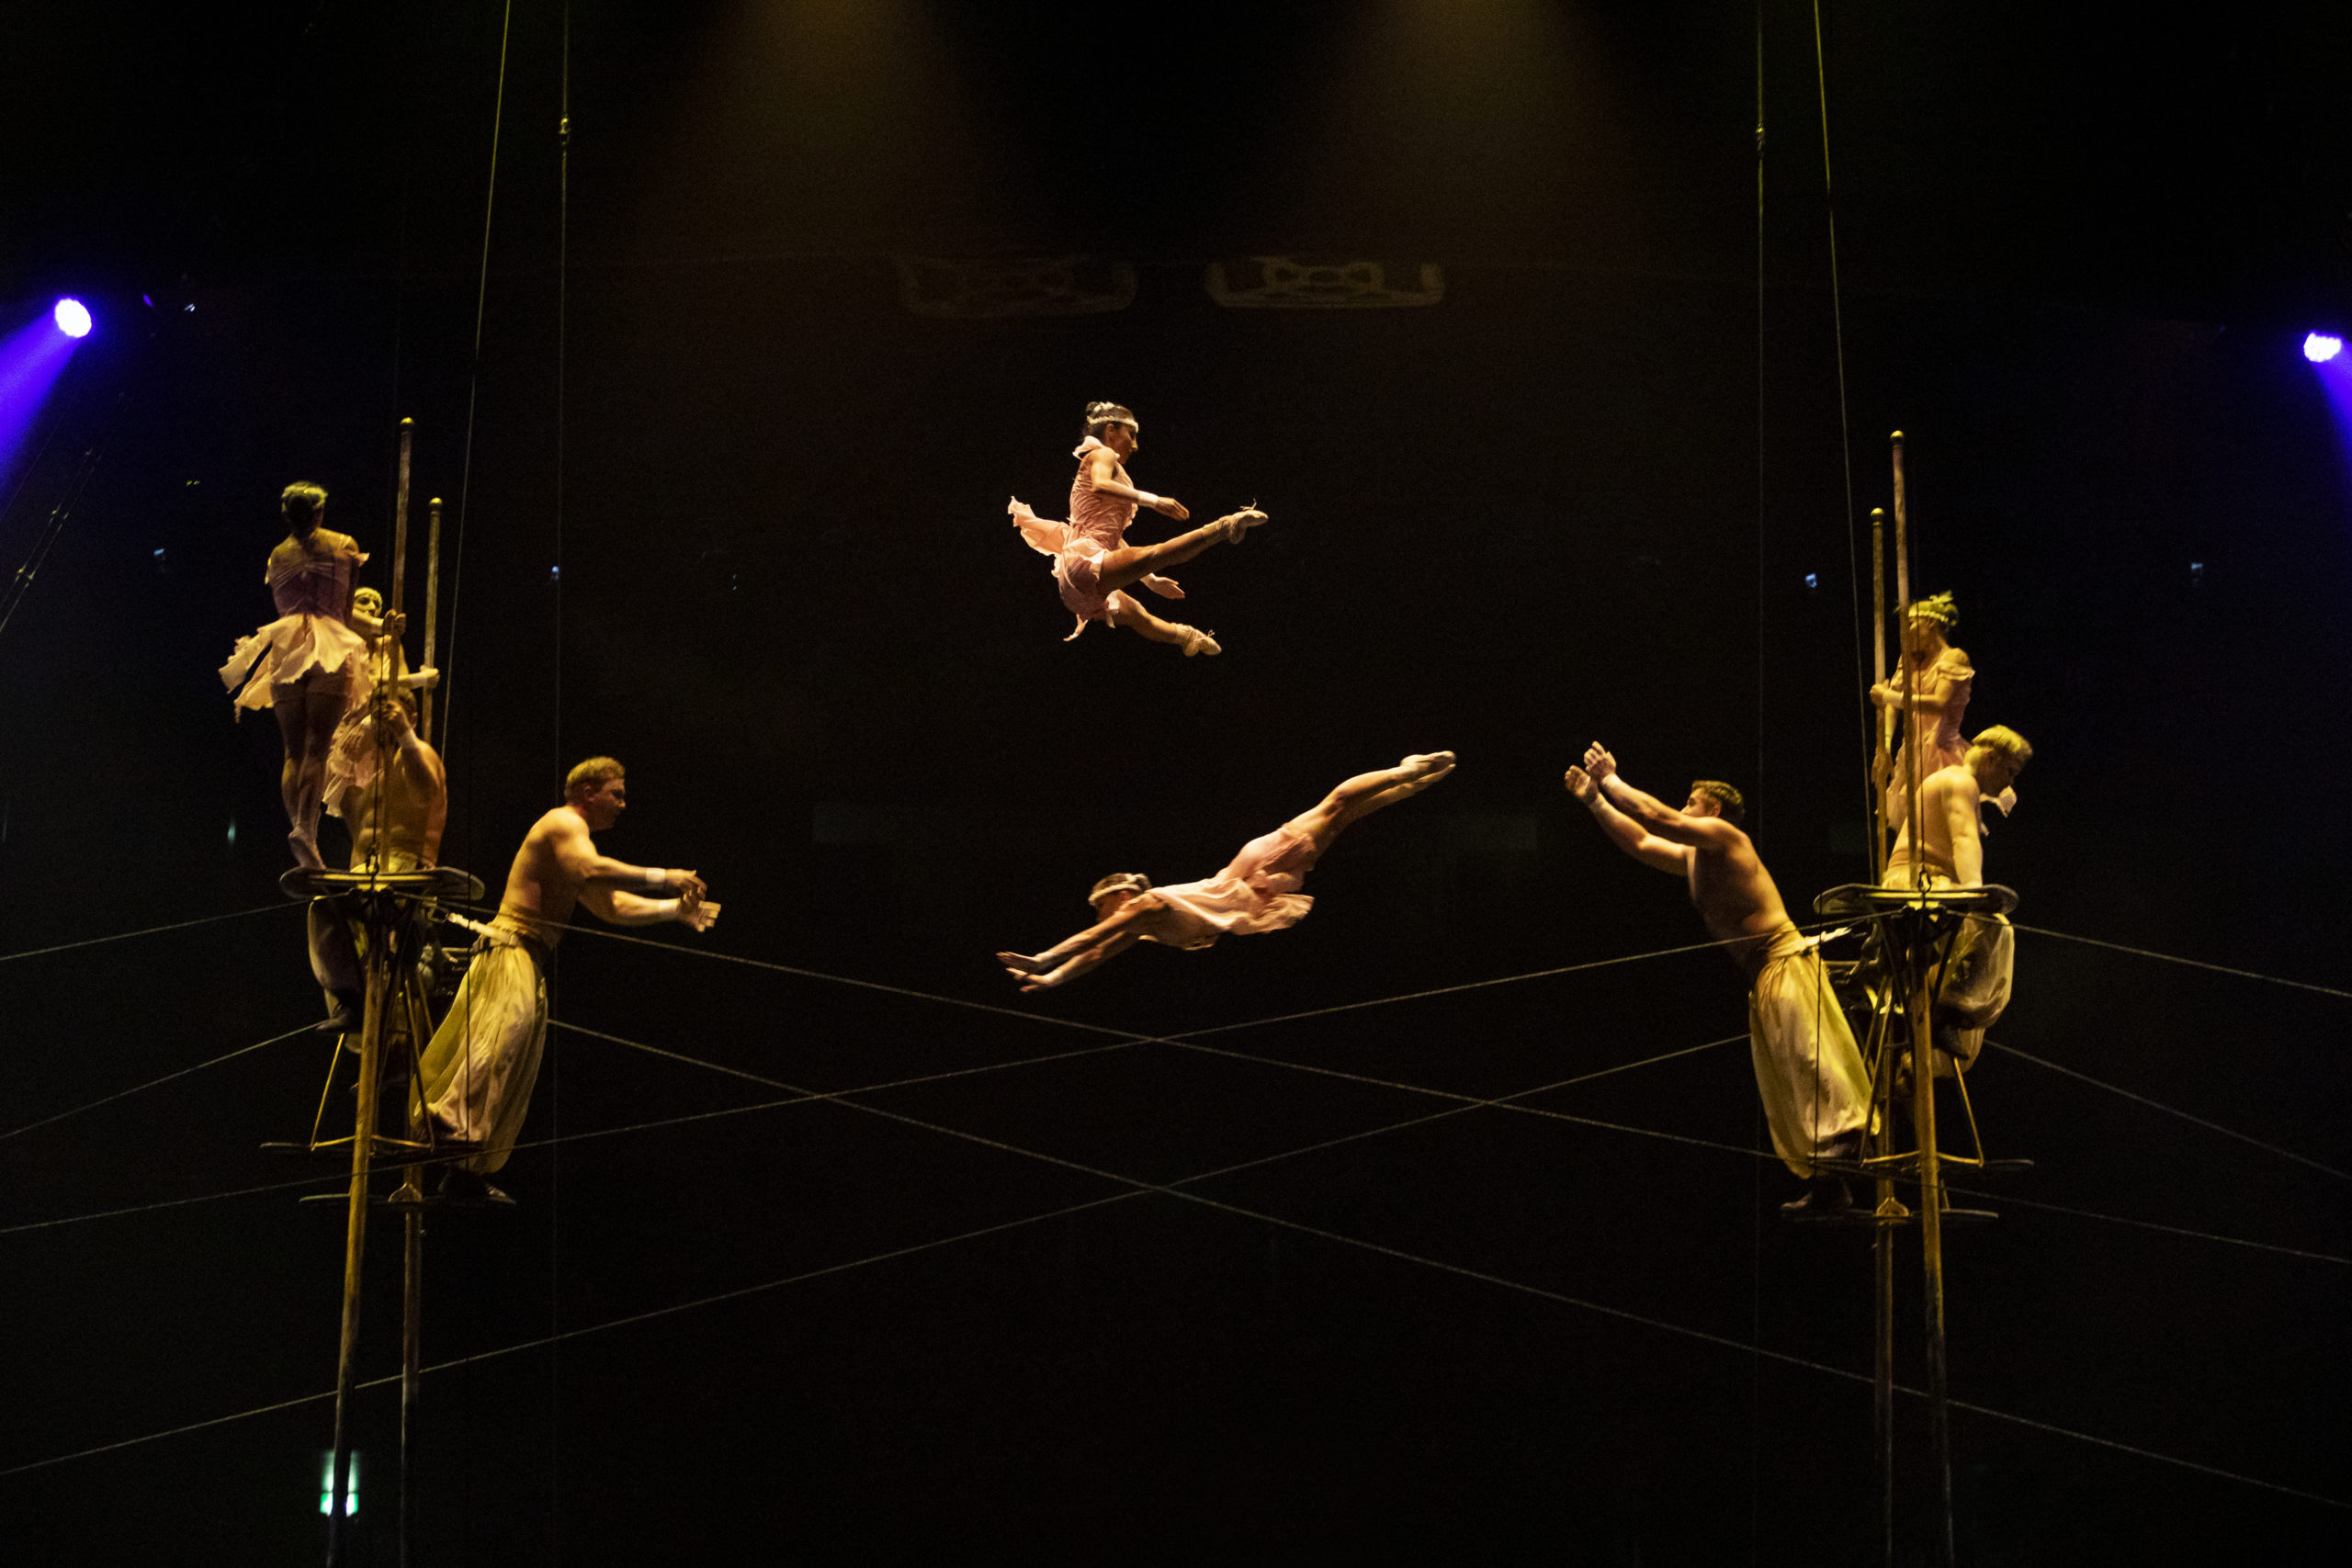 Cirque Du Soleil's Corteo - An Absolute Must See - TLM